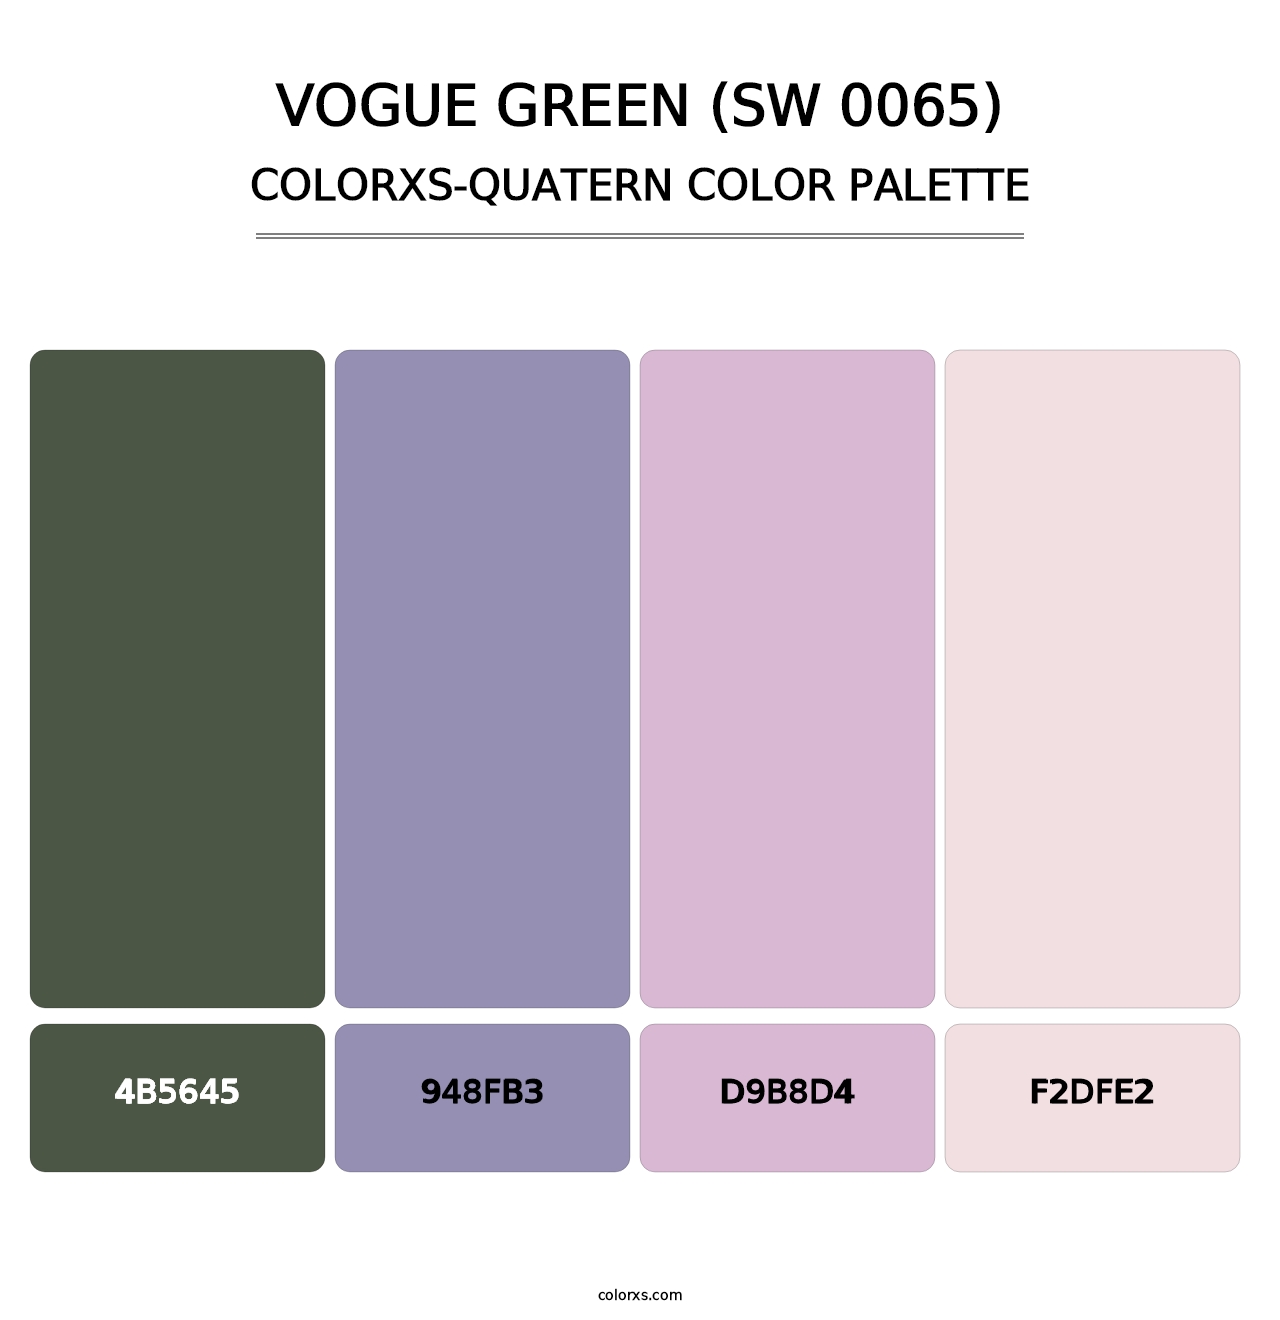 Vogue Green (SW 0065) - Colorxs Quatern Palette